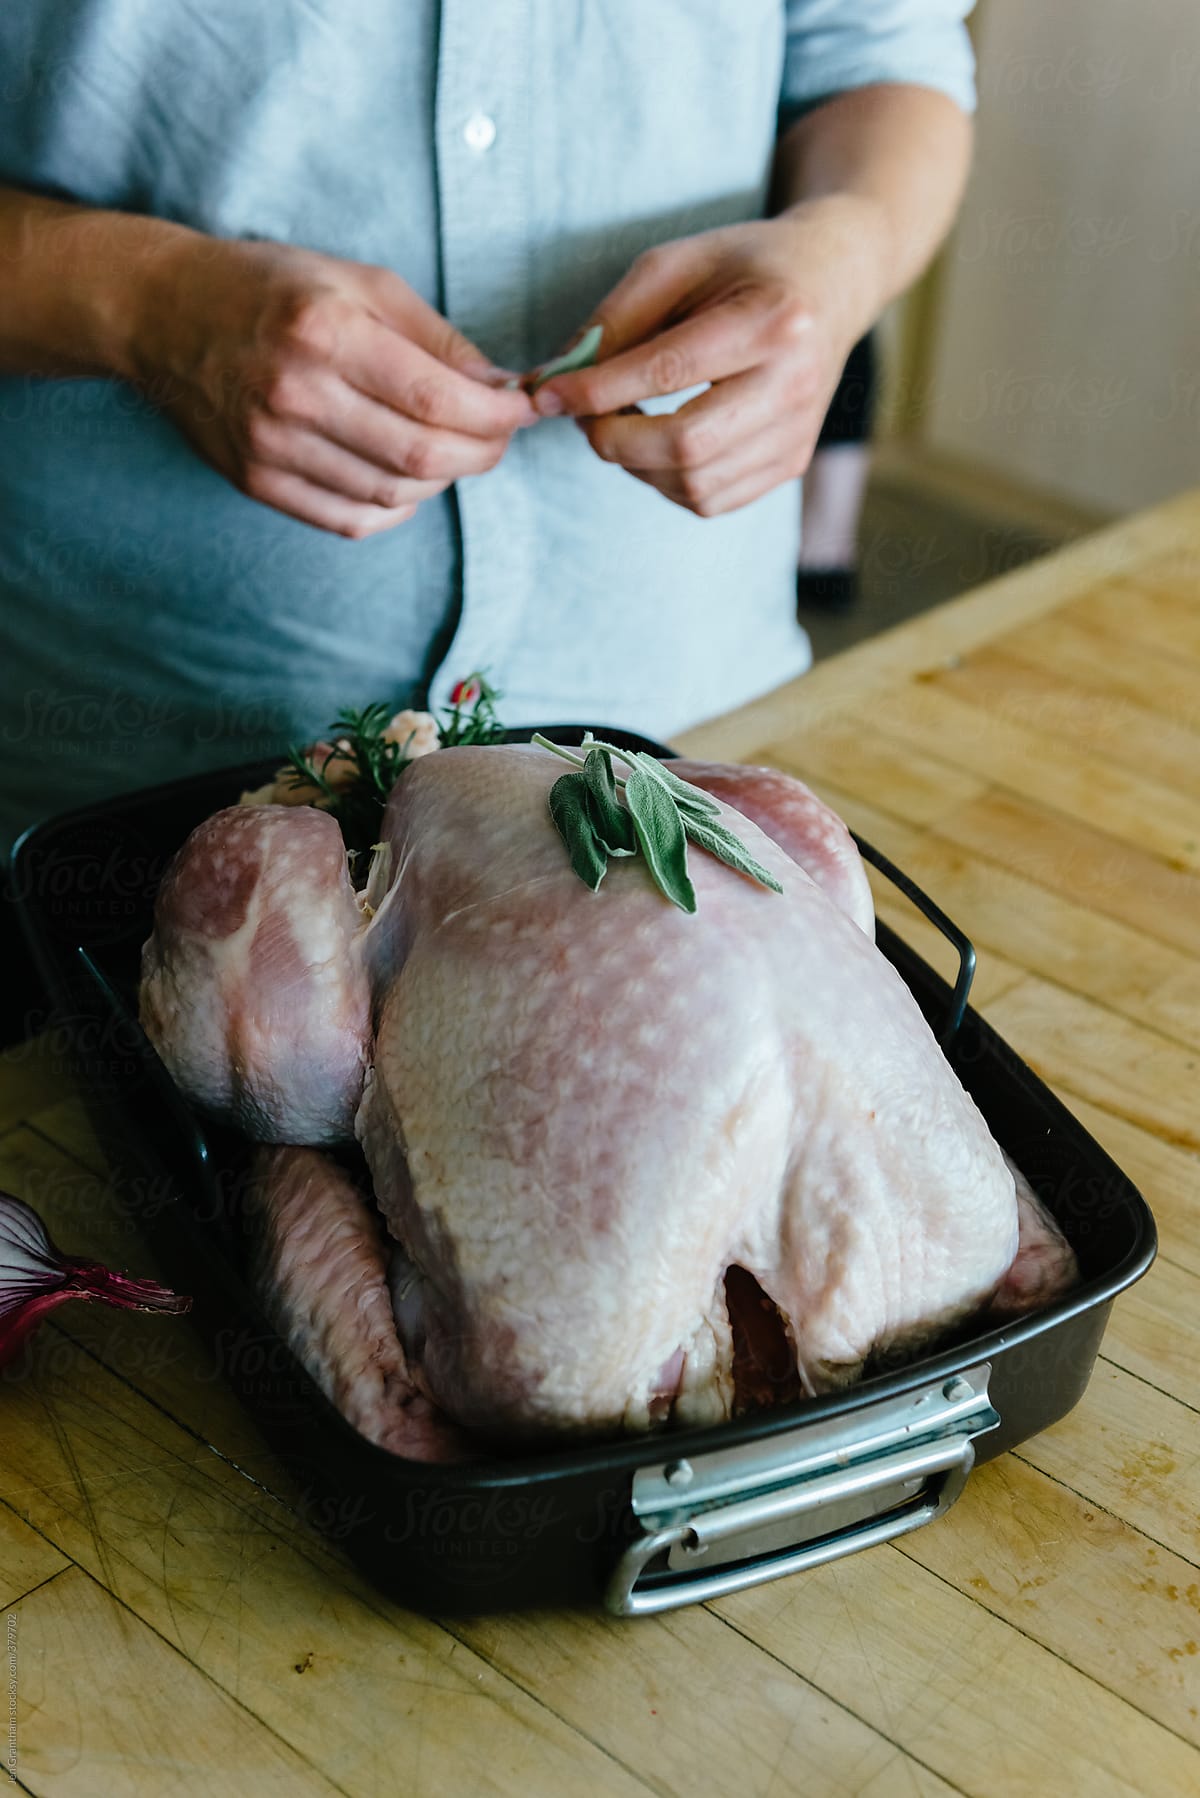 Preparing turkey for thanksgiving dinner